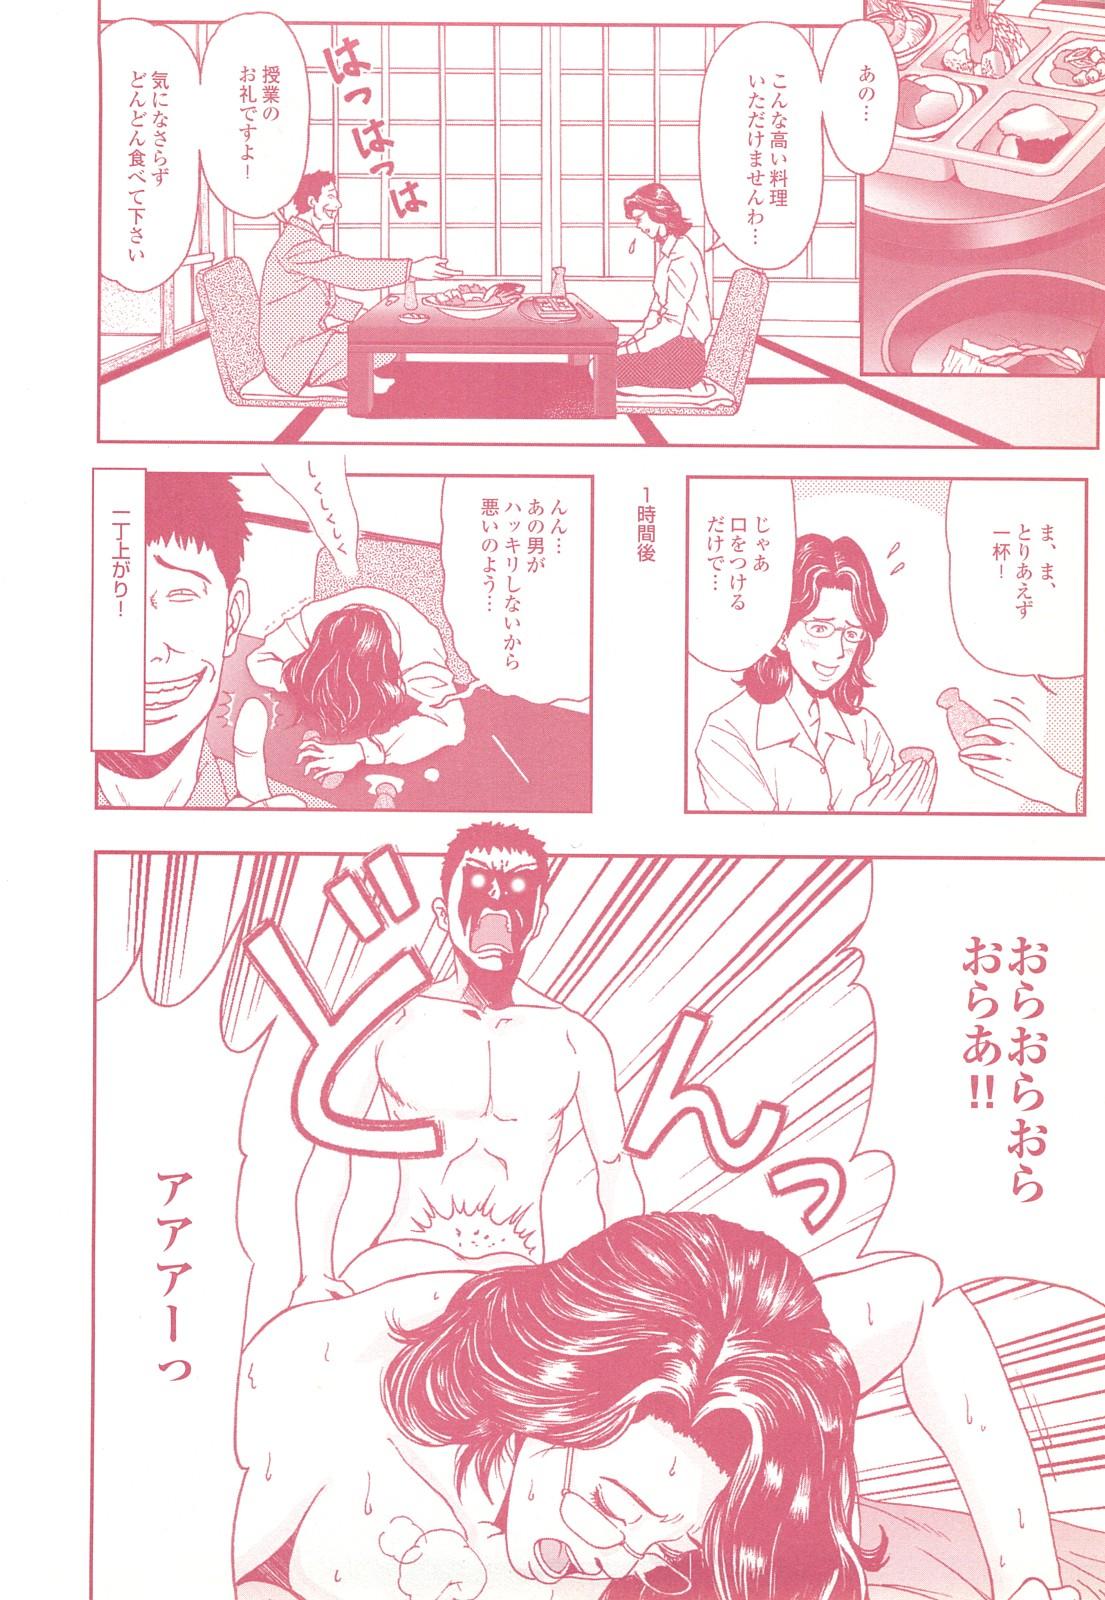 コミック裏モノJAPAN Vol.18 今井のりたつスペシャル号 121